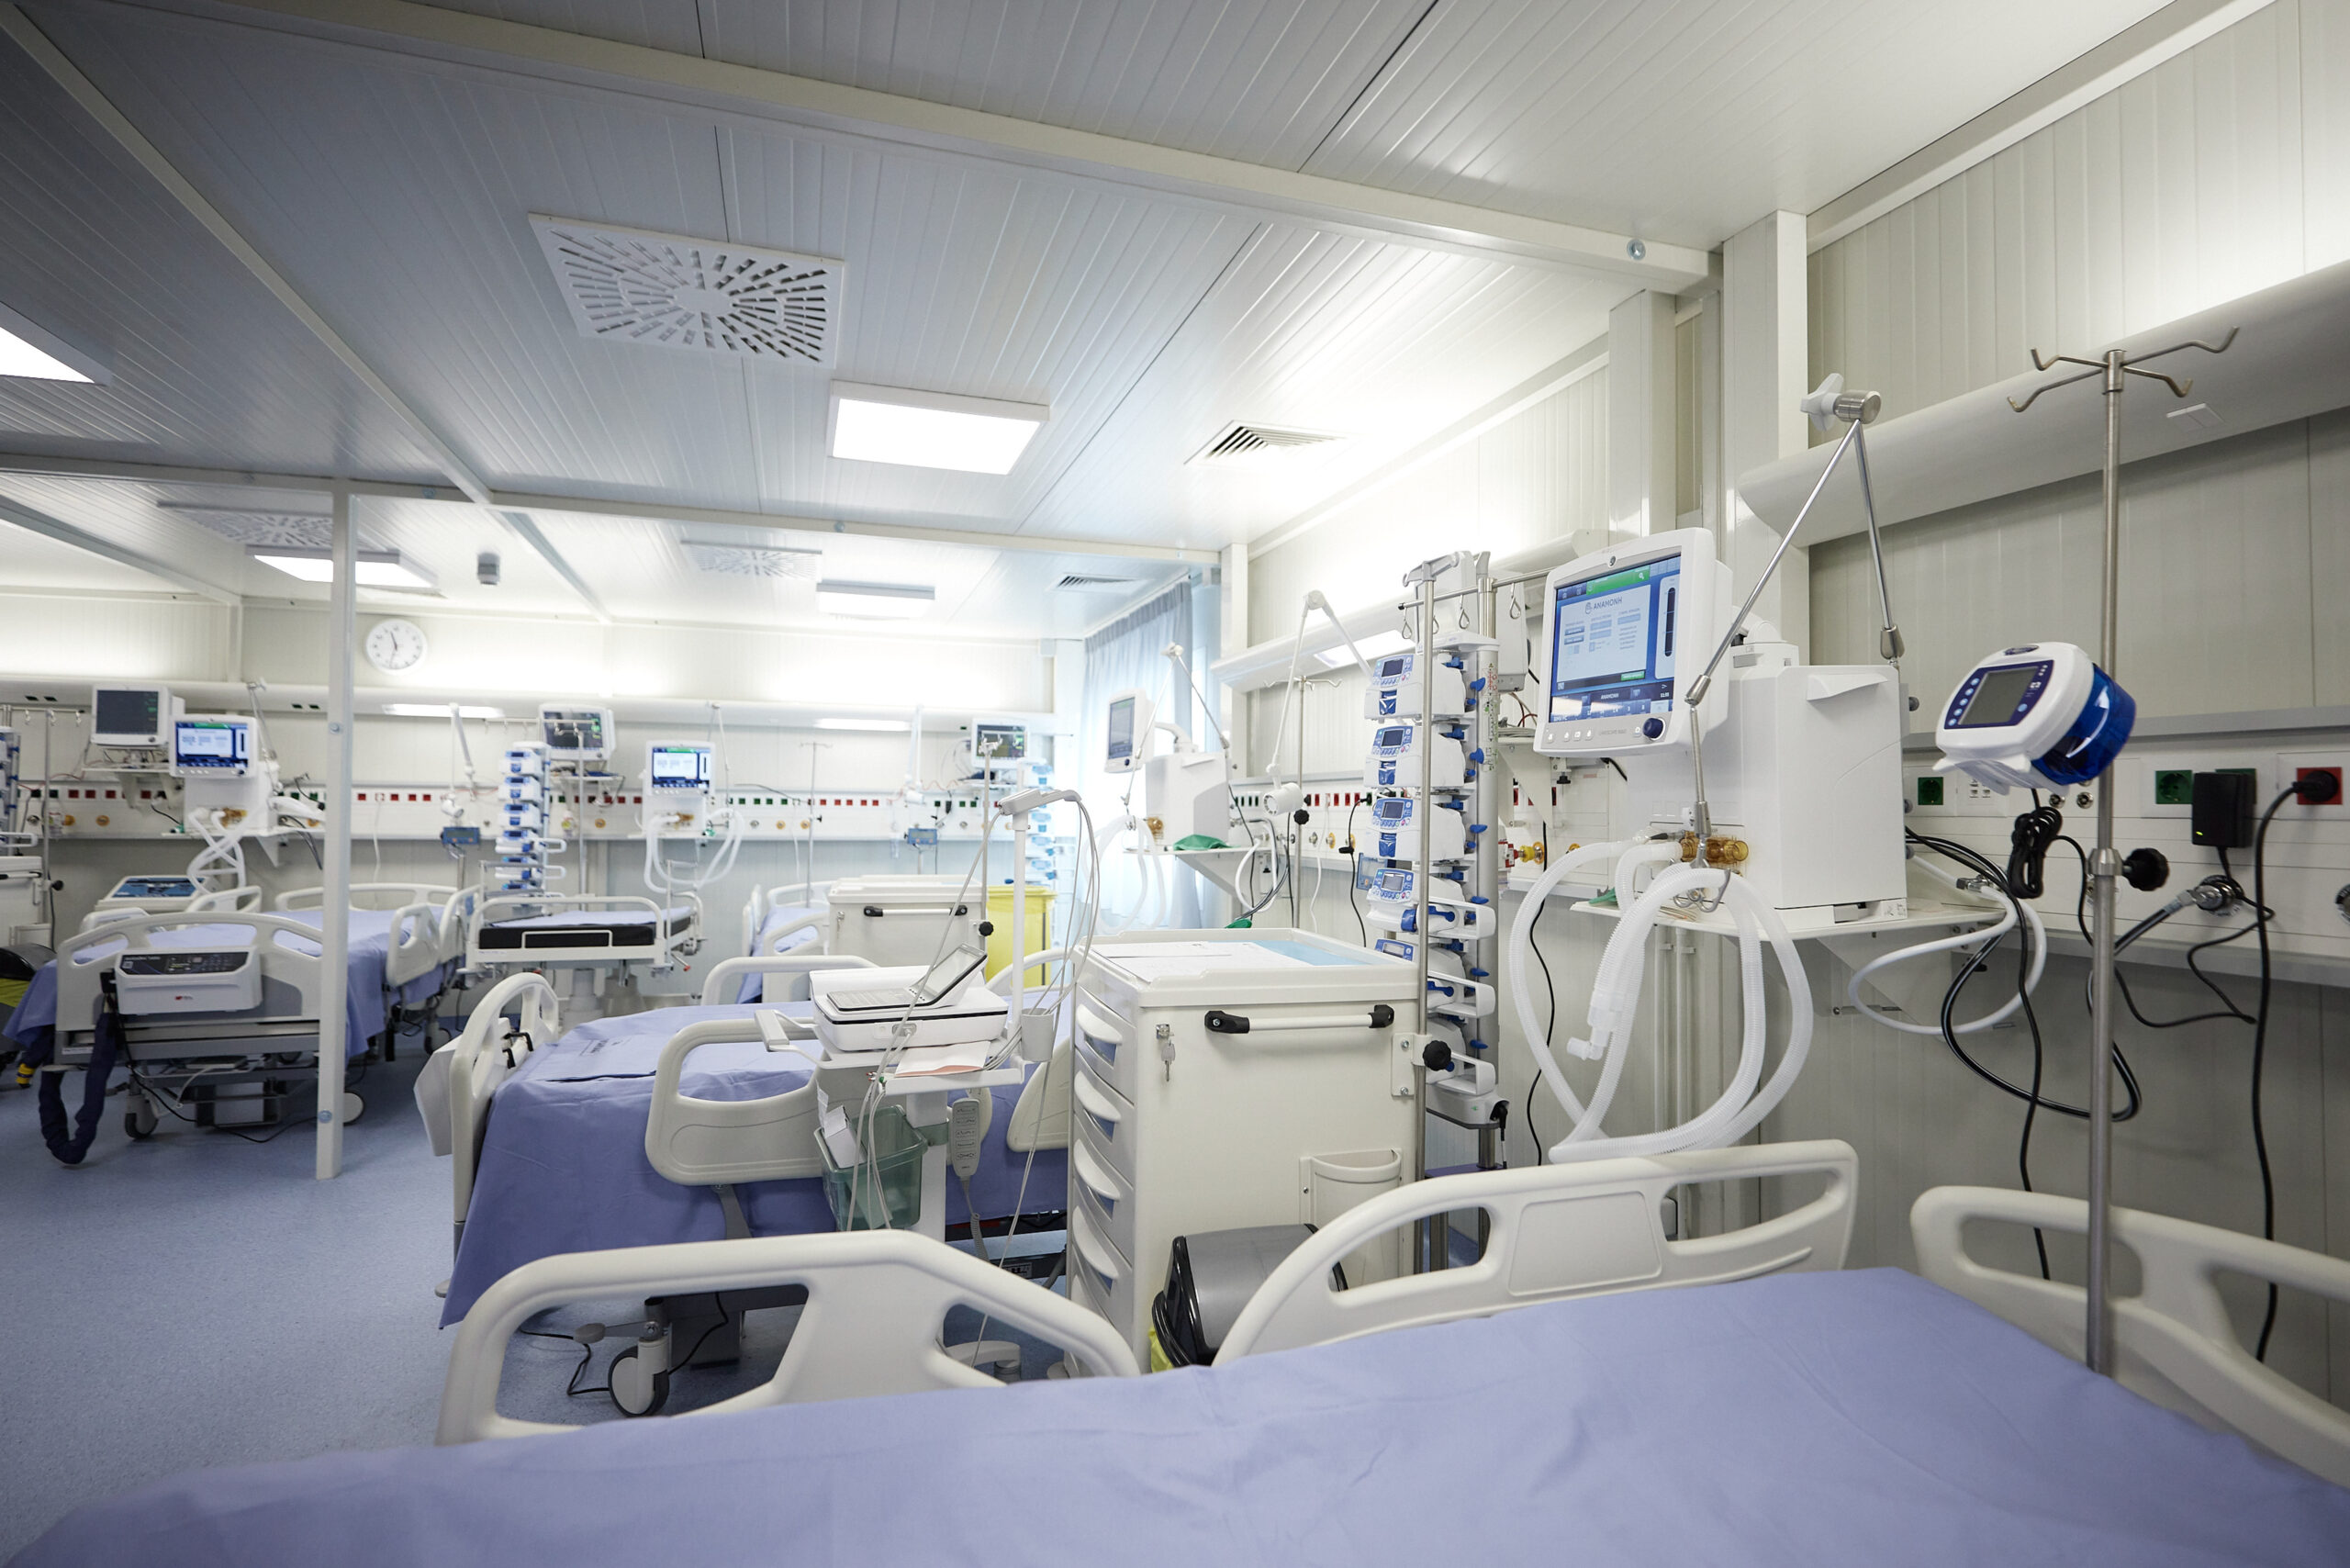 Θεσσαλονίκη: Αναστολή τακτικών χειρουργείων στο νοσοκομείο Παπανικολάου λόγω έλλειψης αναισθησιολόγων